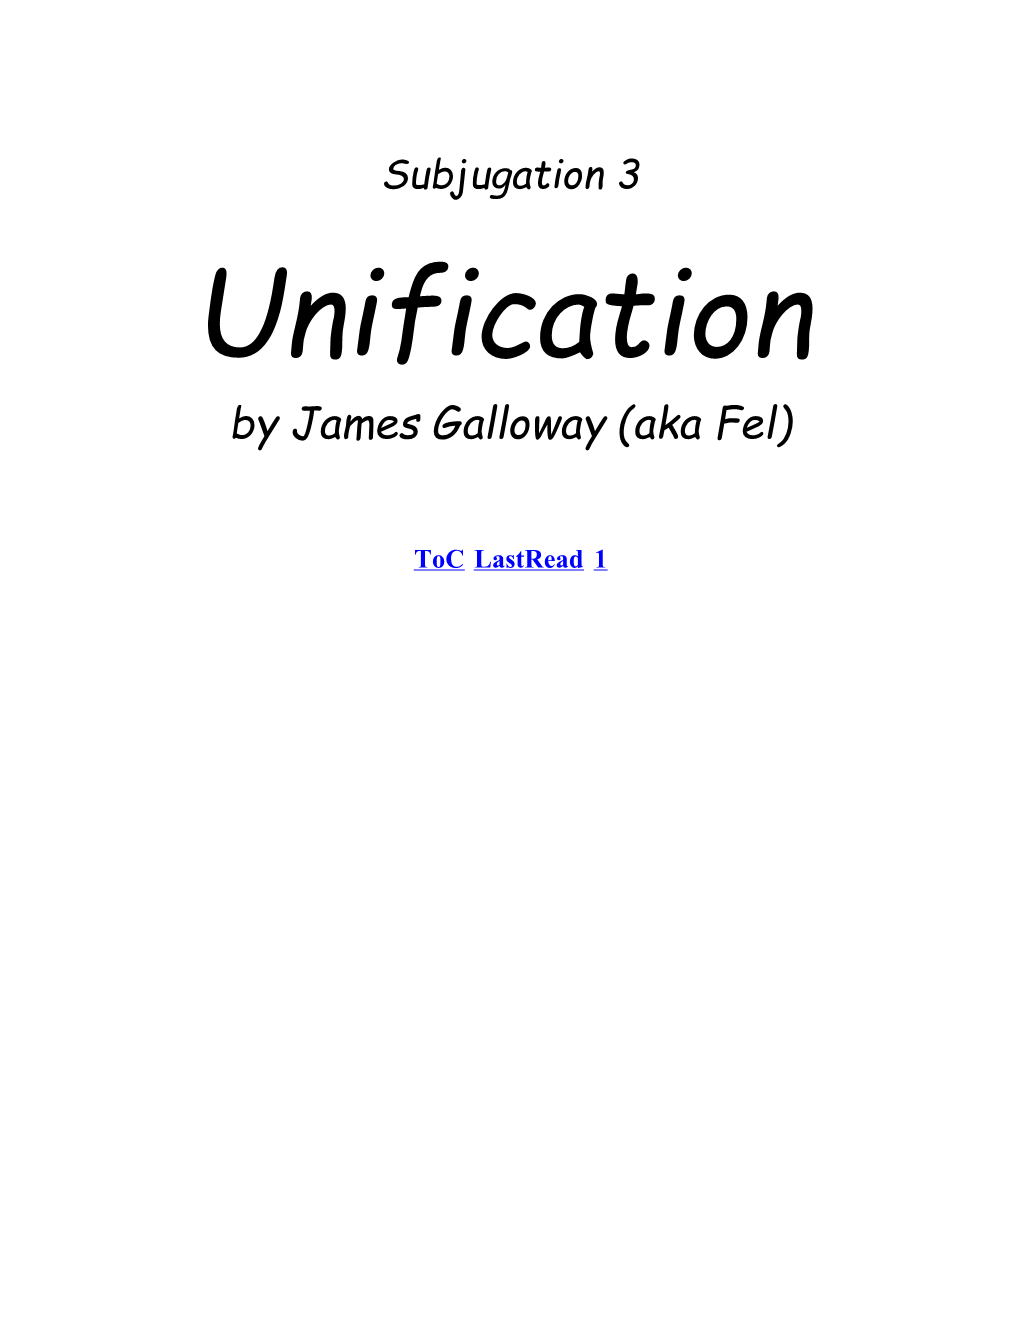 Subjugation III - Unification by Fel